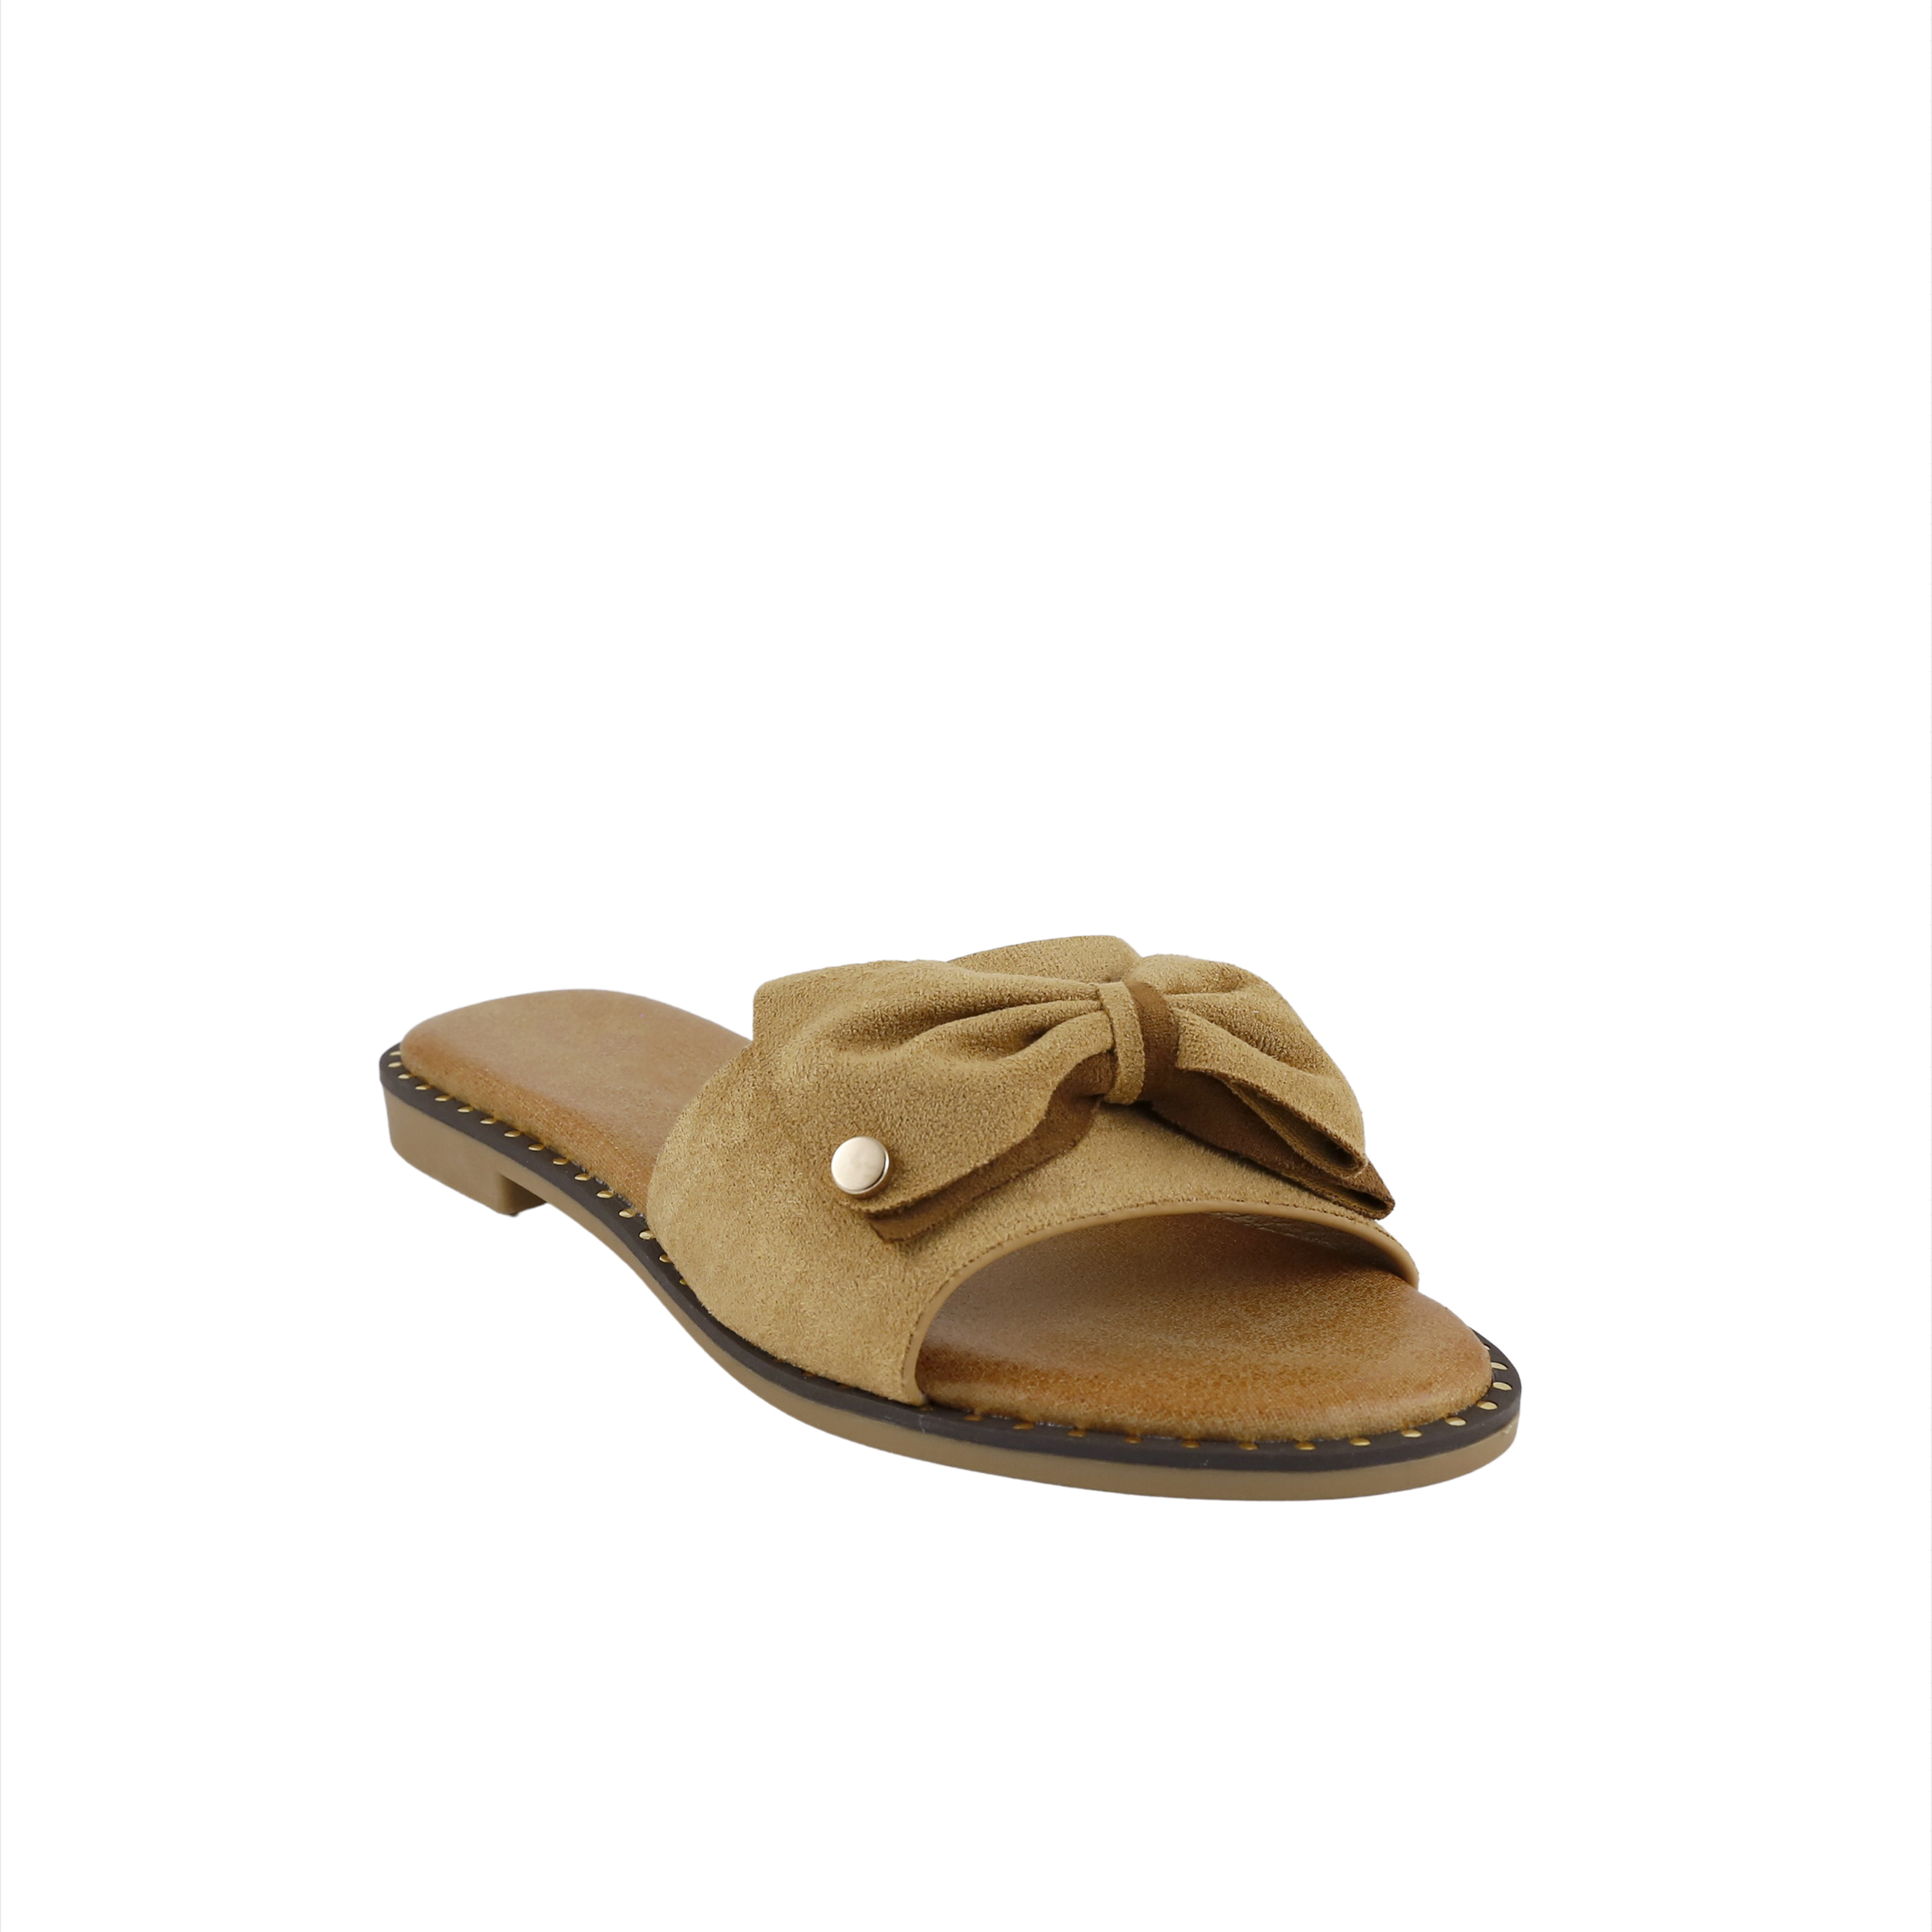 Woman Shoes Sandals - Flip Flops Camel flip flop with bow